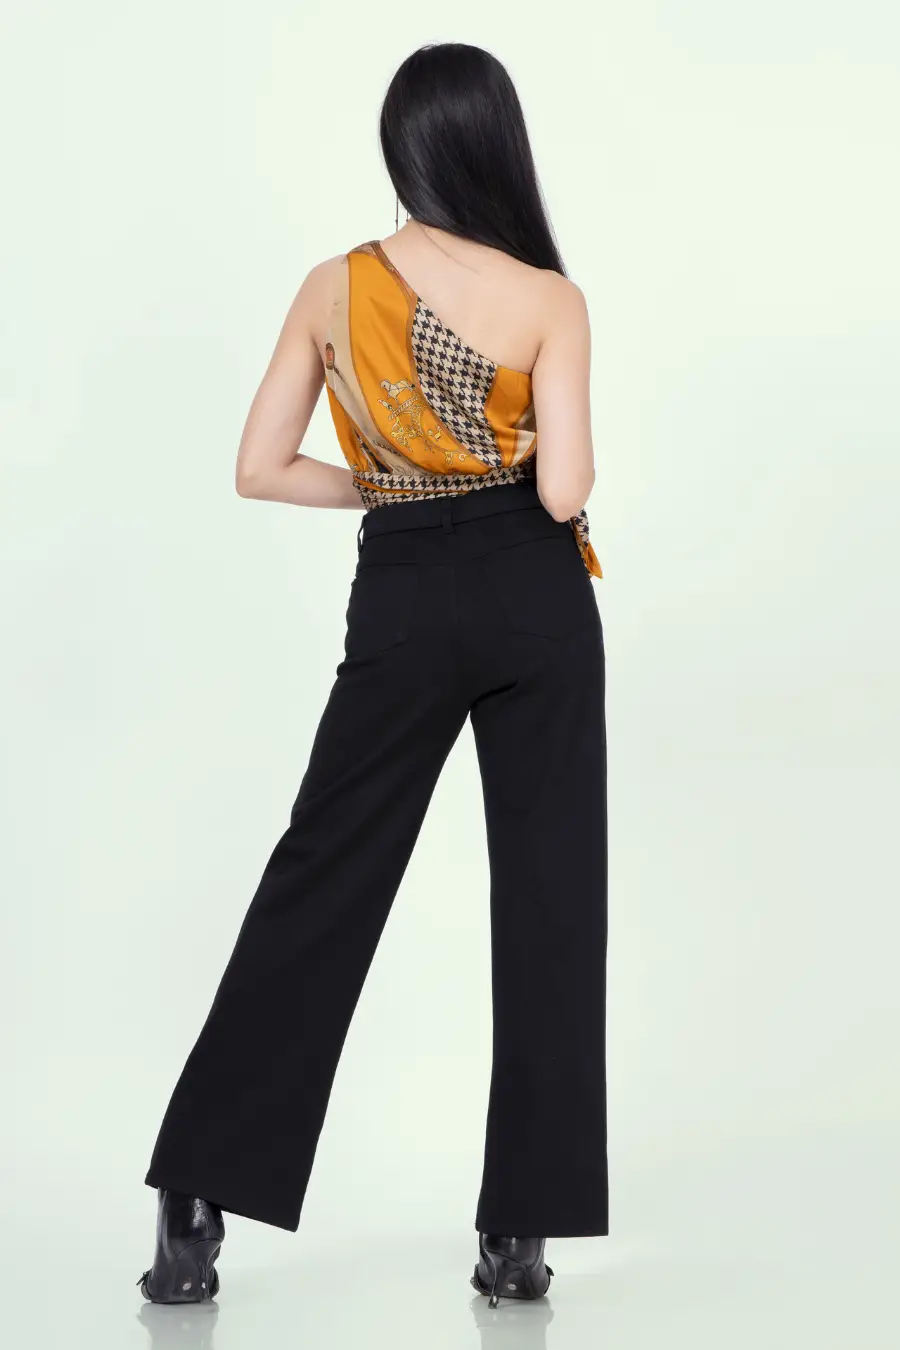 'Elysian' One Shoulder Crop Top Sewing Pattern